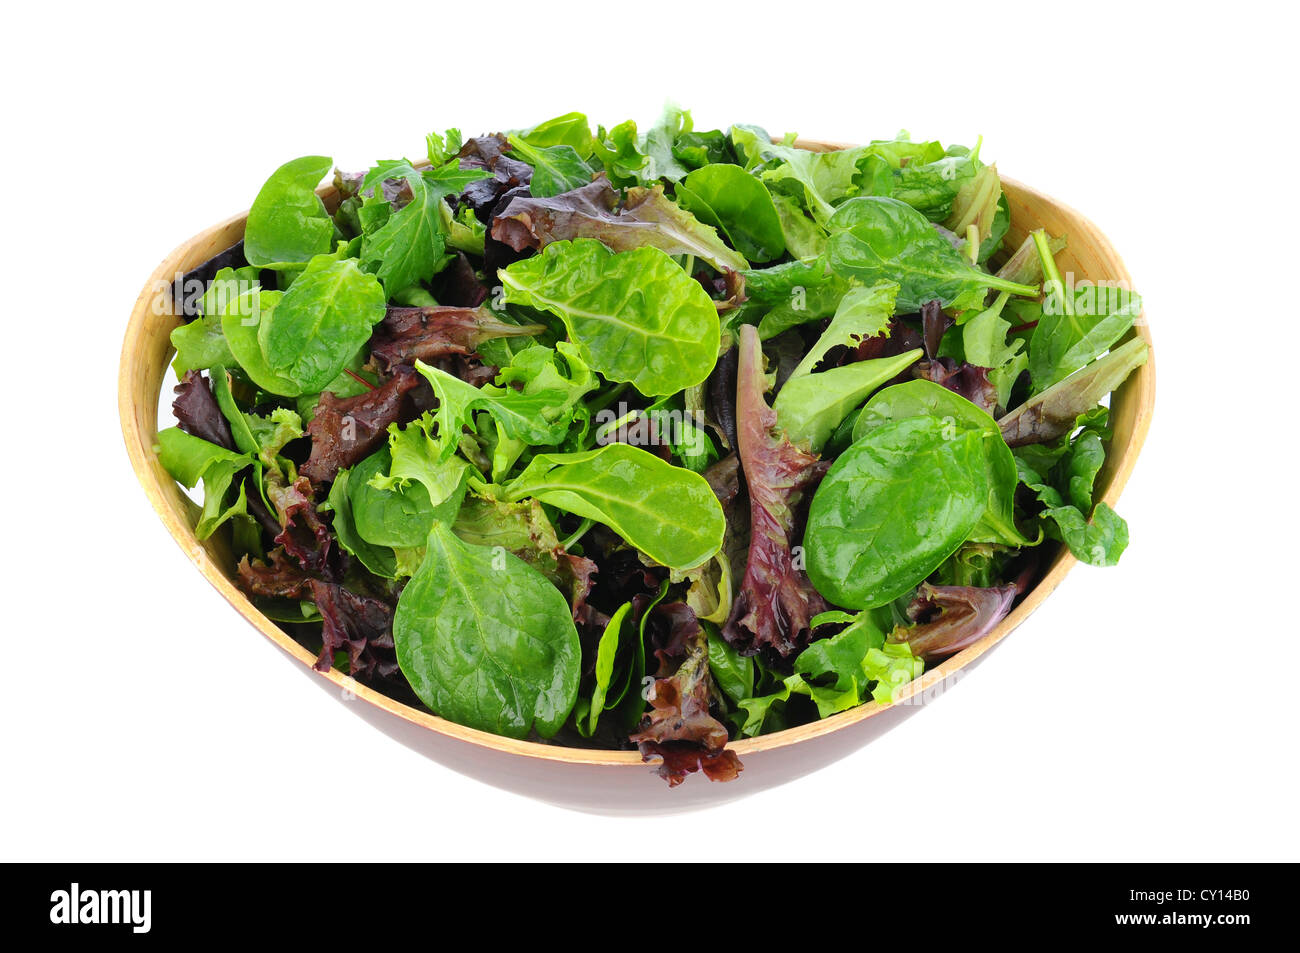 Eine hölzerne Schüssel voller gemischte Salat, Spinat, Rucola, einschl. Romaine. Querformat auf einem weißen Hintergrund. Stockfoto